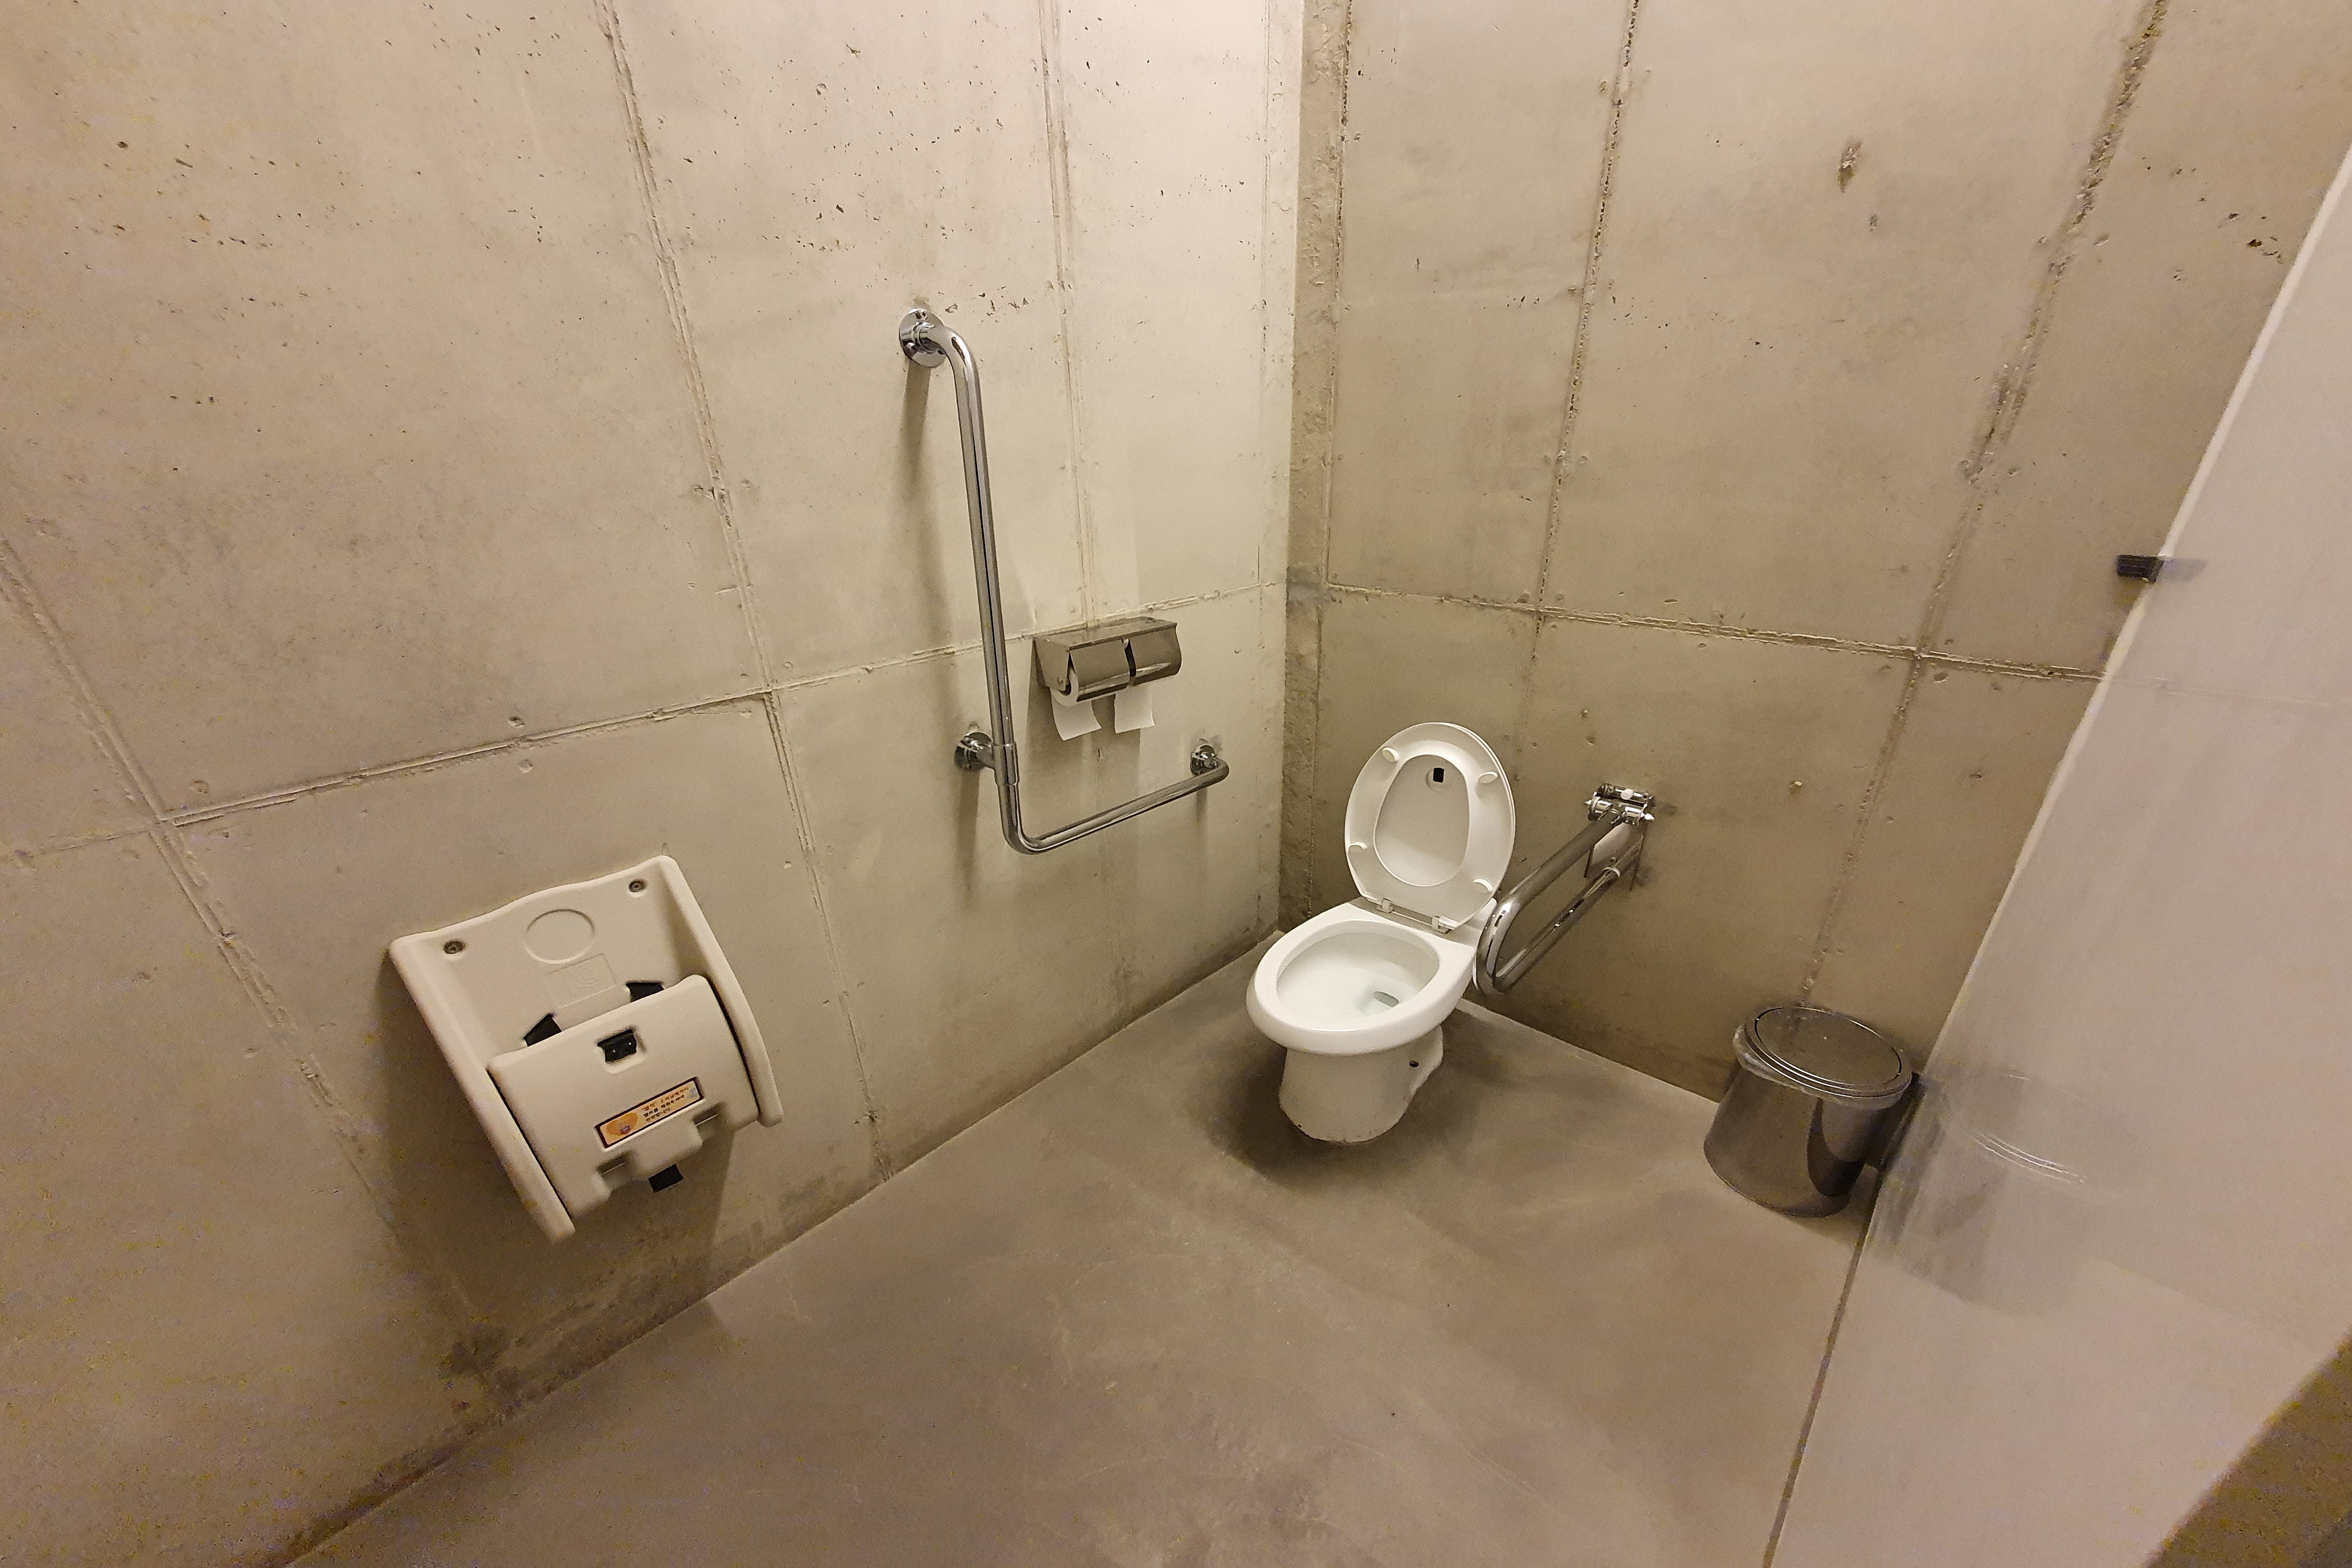 장애인 화장실0 : 사비나미술관 장애인화장실 사진입니다.